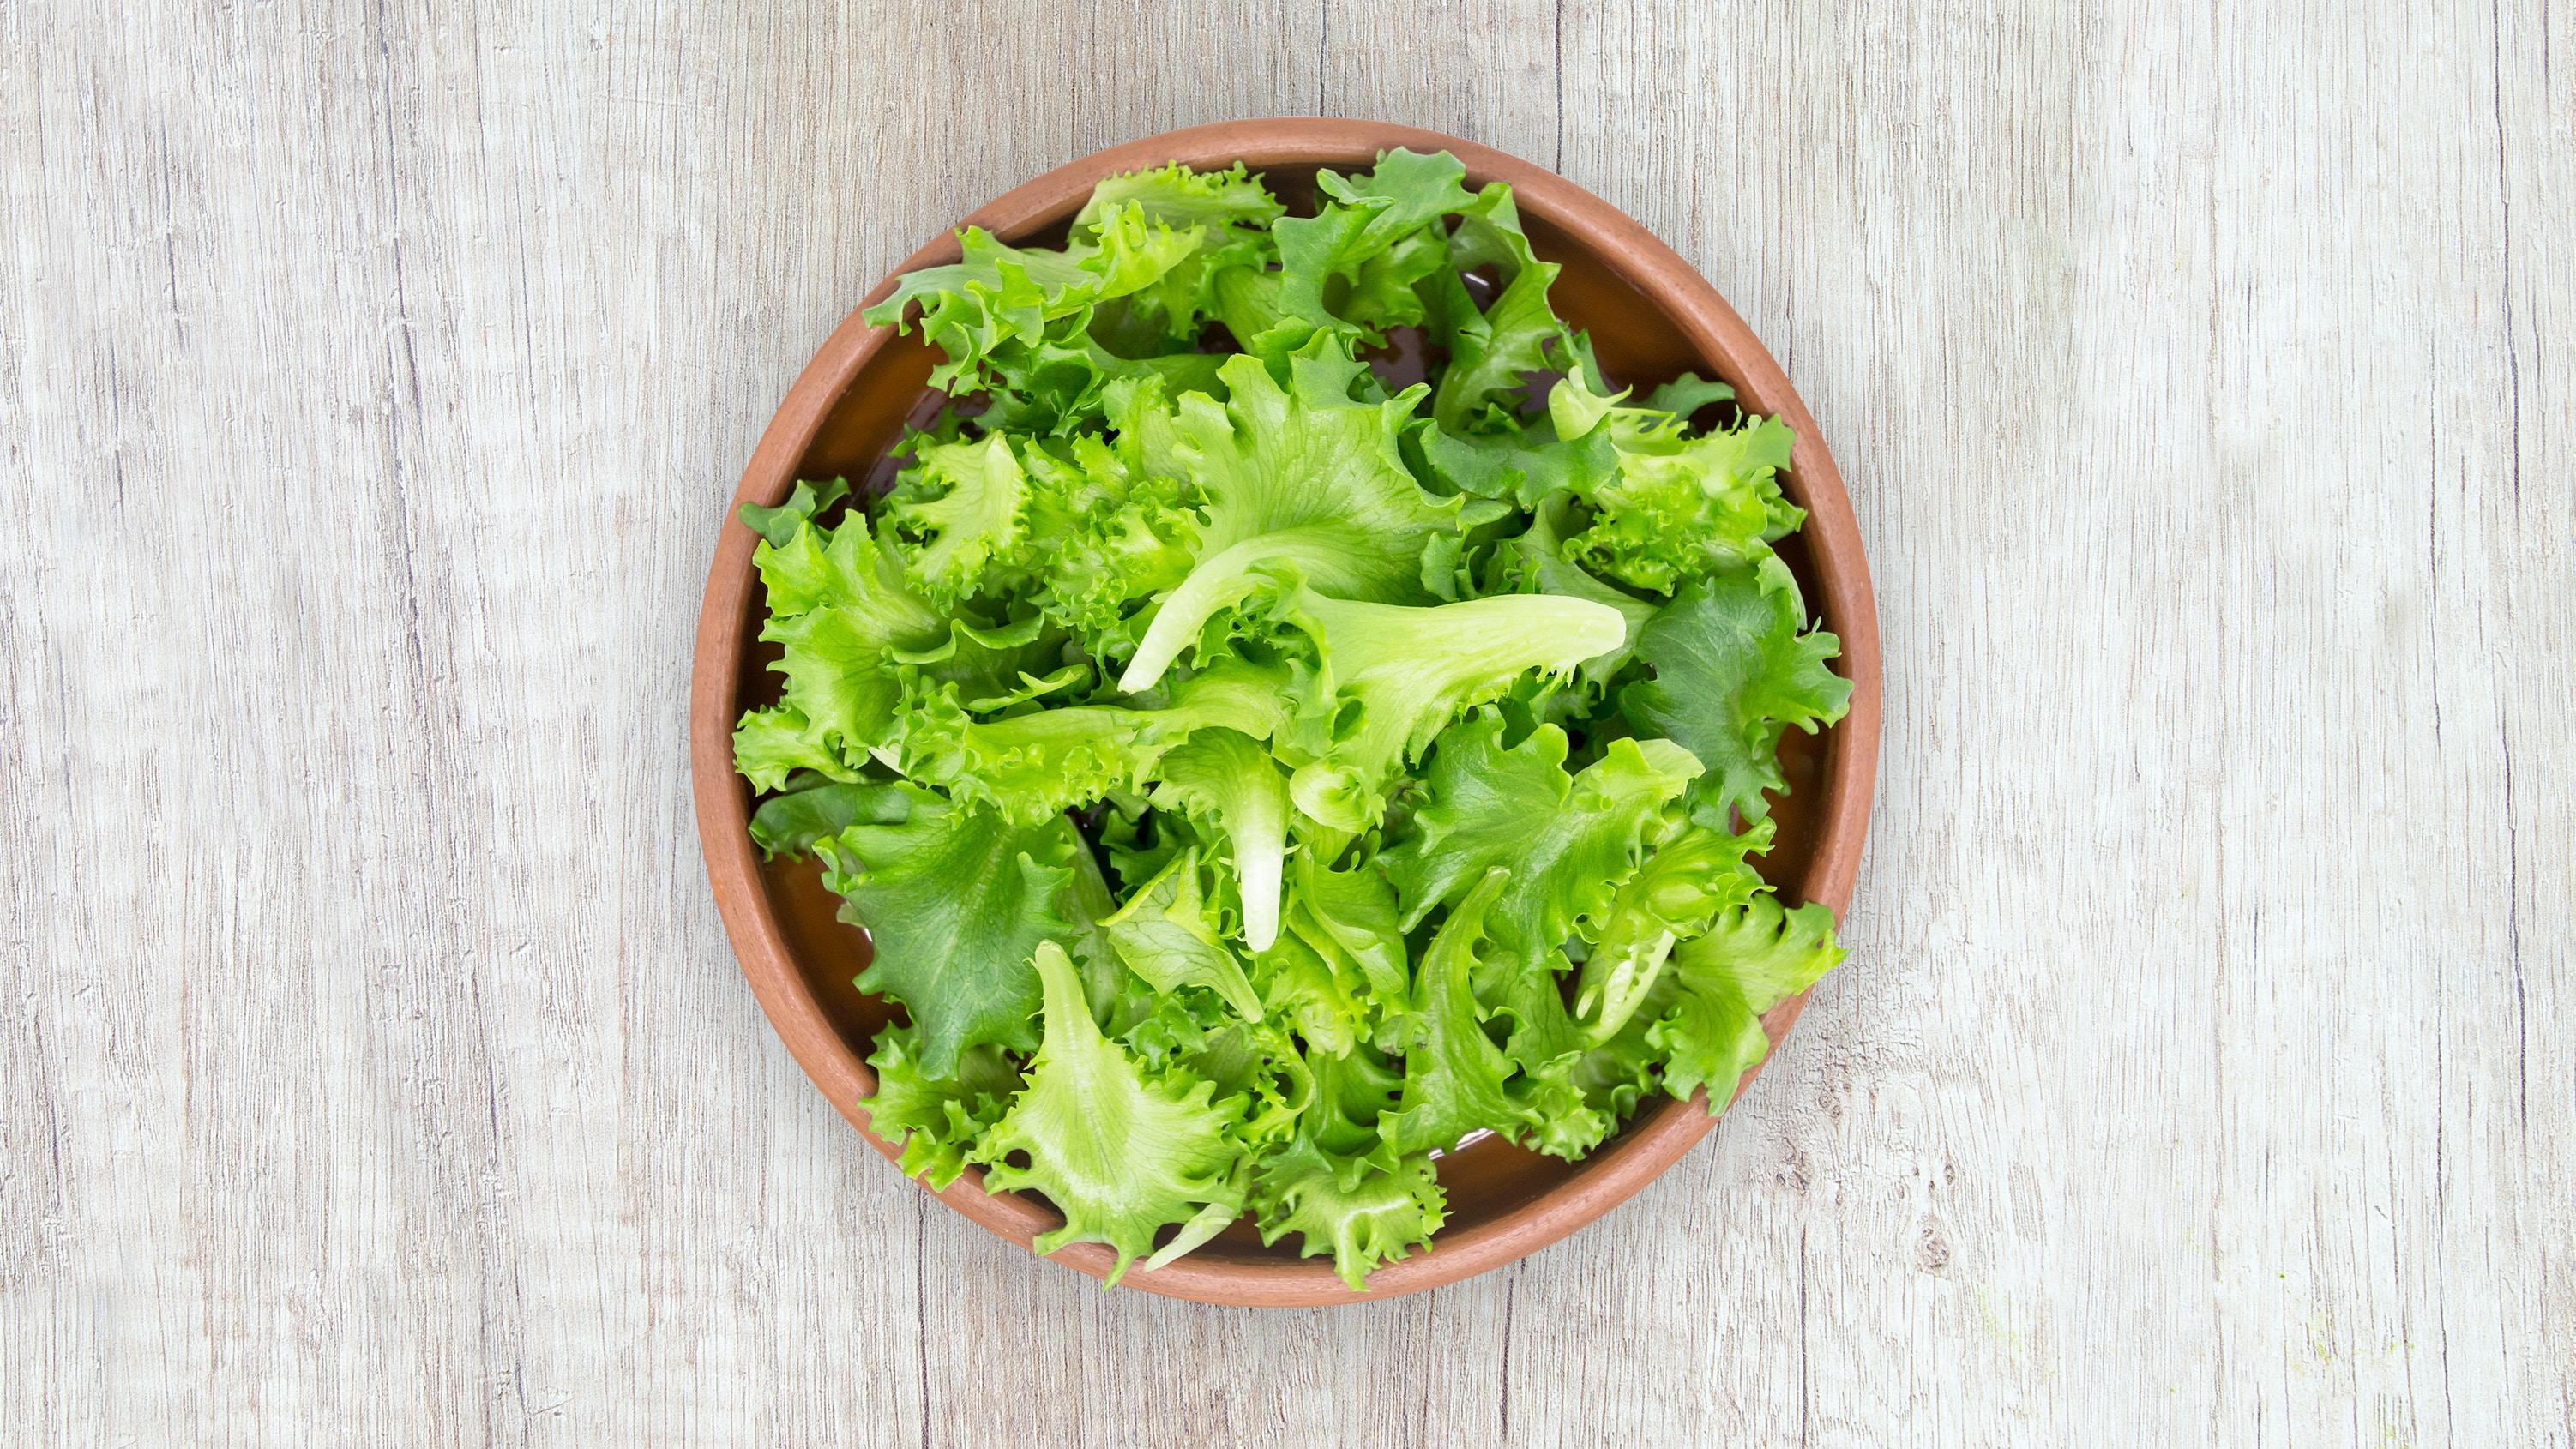 Sałata jako źródło witamin. Jak sałata wpływa na zdrowie? Sałata zielona warzywo - właściwości, witaminy i wartości odżywcze sałaty zielonej. 10 powodów, dla których warto jeść sałatę 